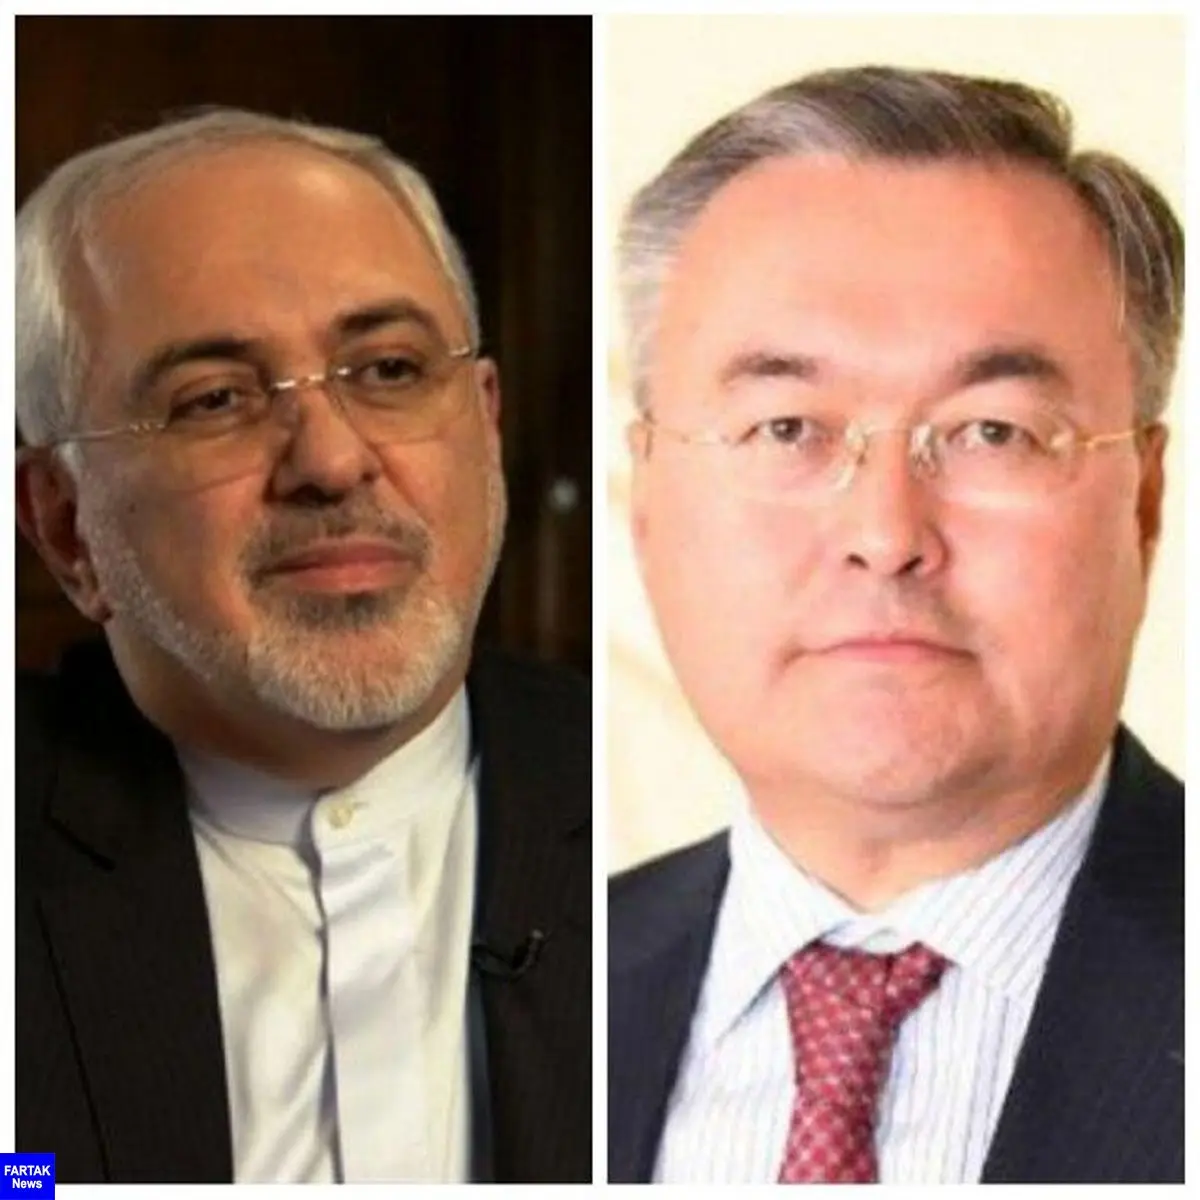 رایزنی تلفنی وزیران امور خارجه ایران و قزاقستان